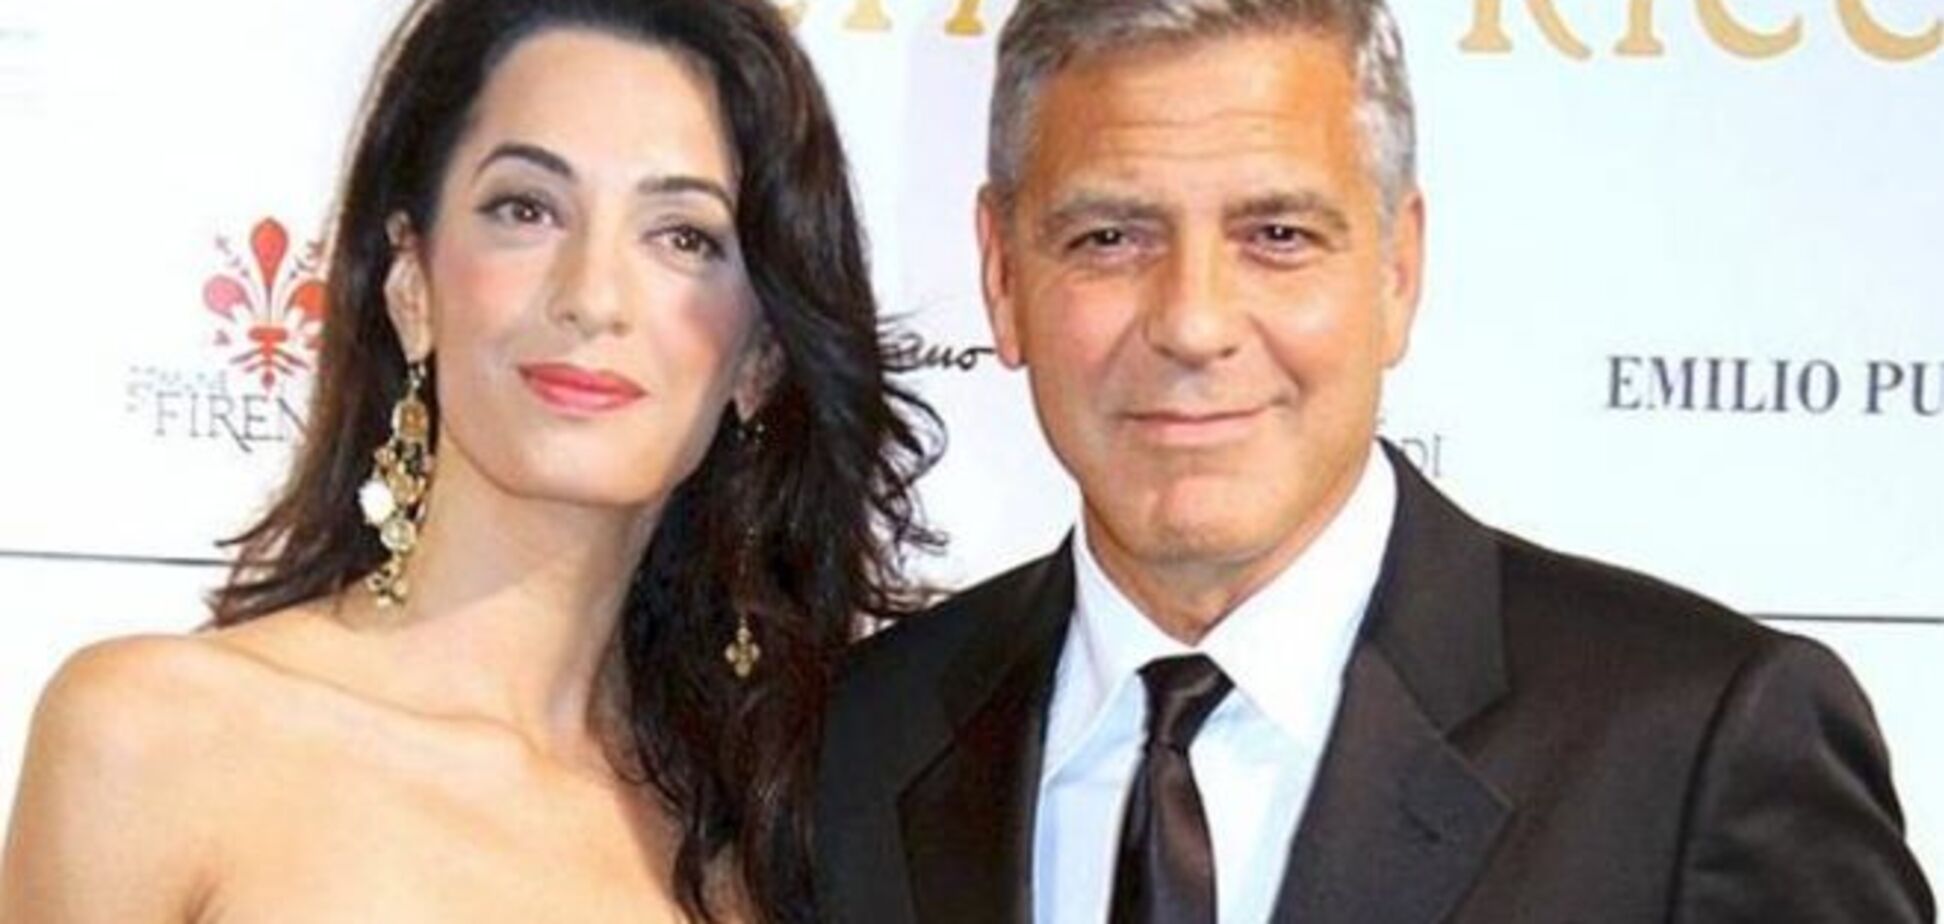 Американские СМИ сообщили о 'трещащем по швам' браке Джорджа Клуни